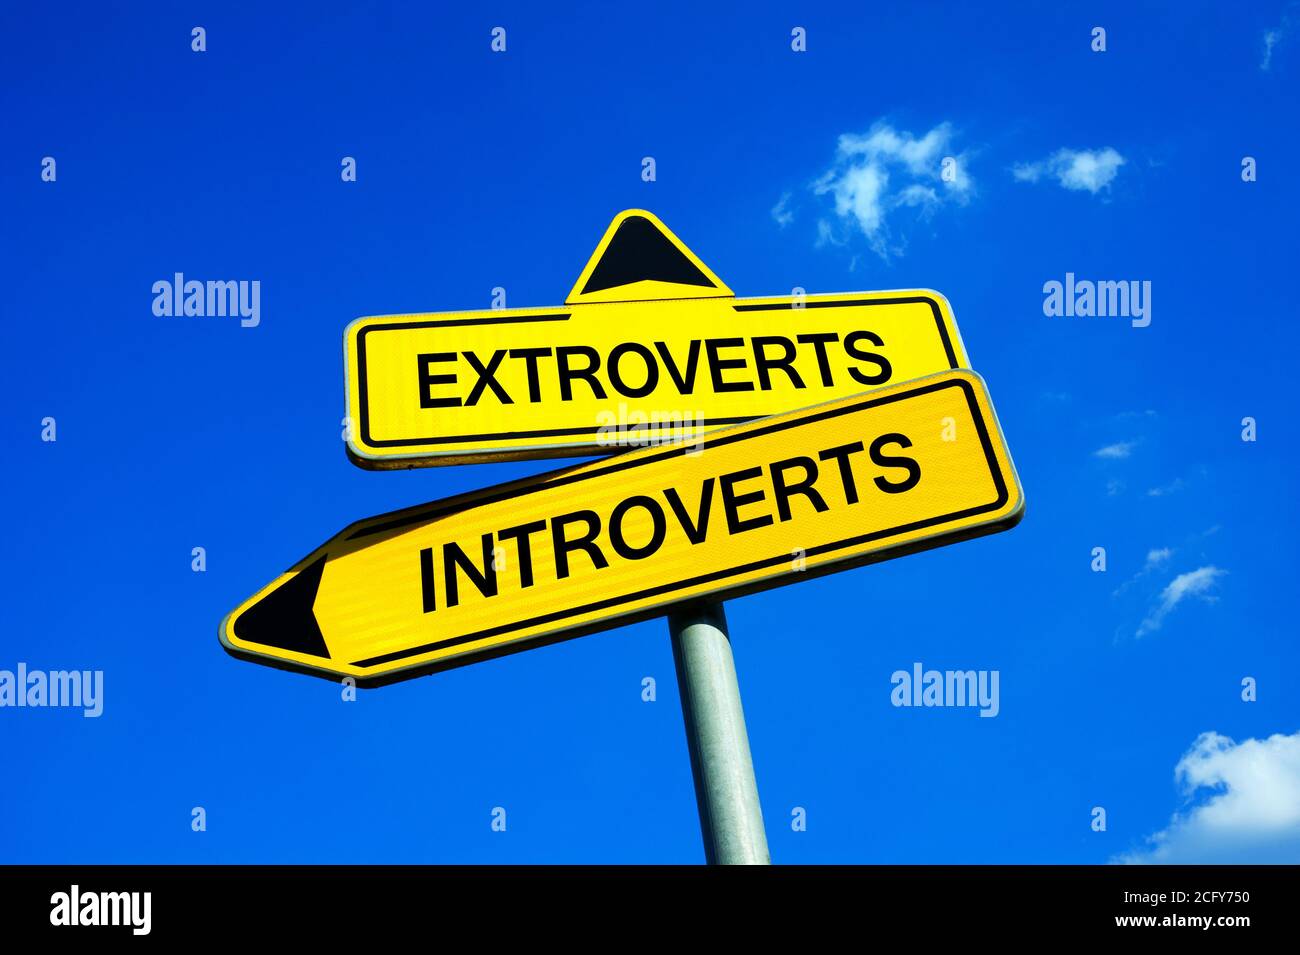 Extroverts oder Introverts - Verkehrszeichen mit zwei Optionen - Unterschied zwischen Persönlichkeiten - Introversion und Extraversion, gesprächig und durchsetzungsfähig p Stockfoto